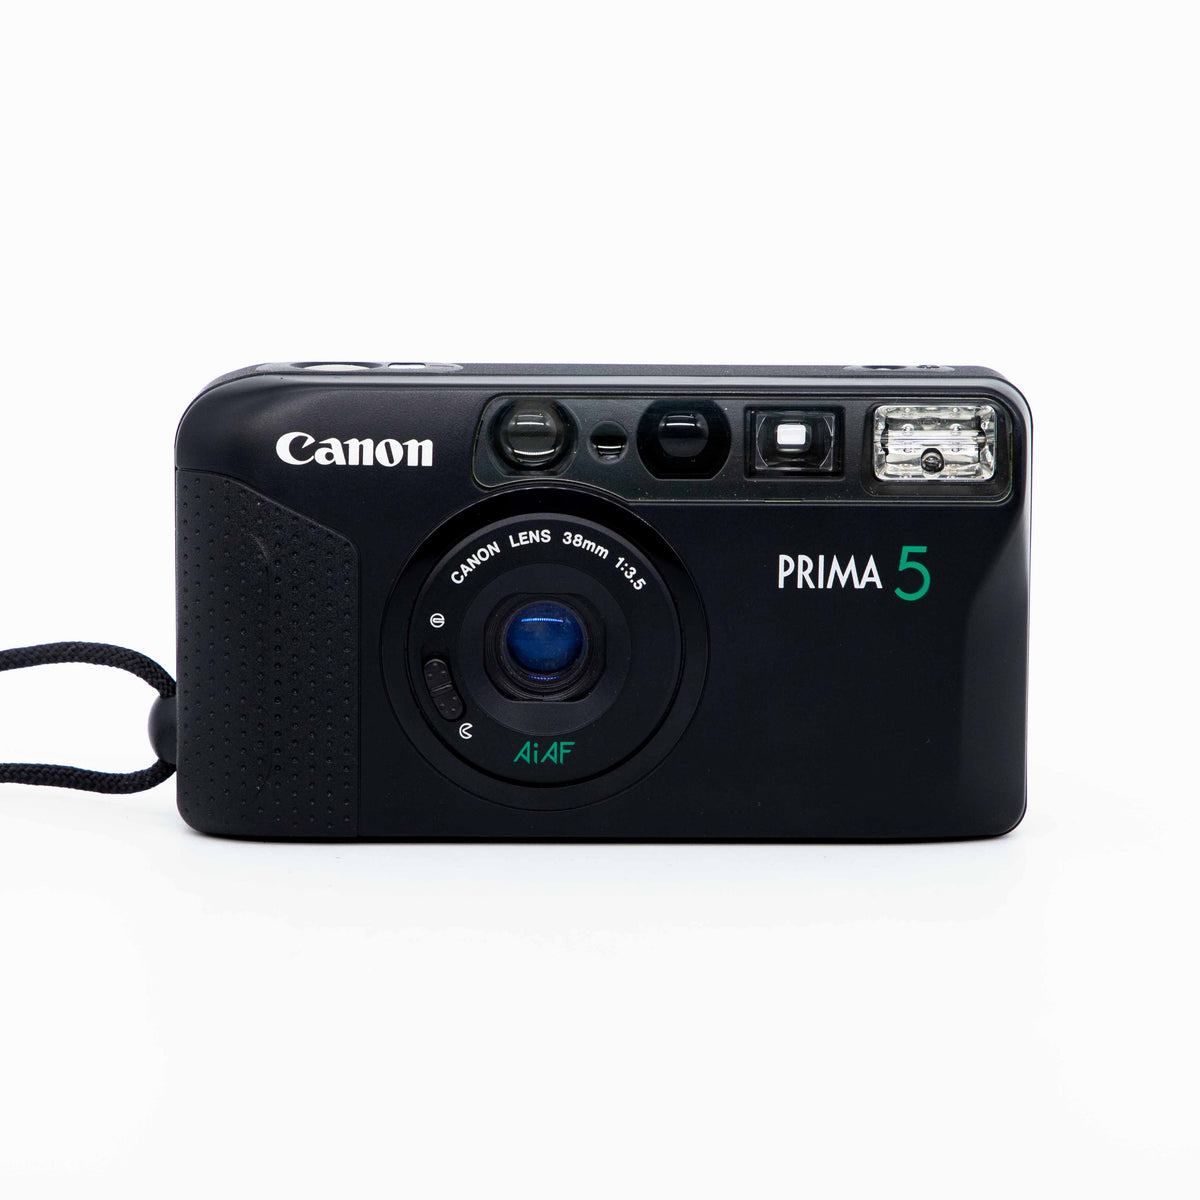 Canon Prima 5 38mm f/3.5